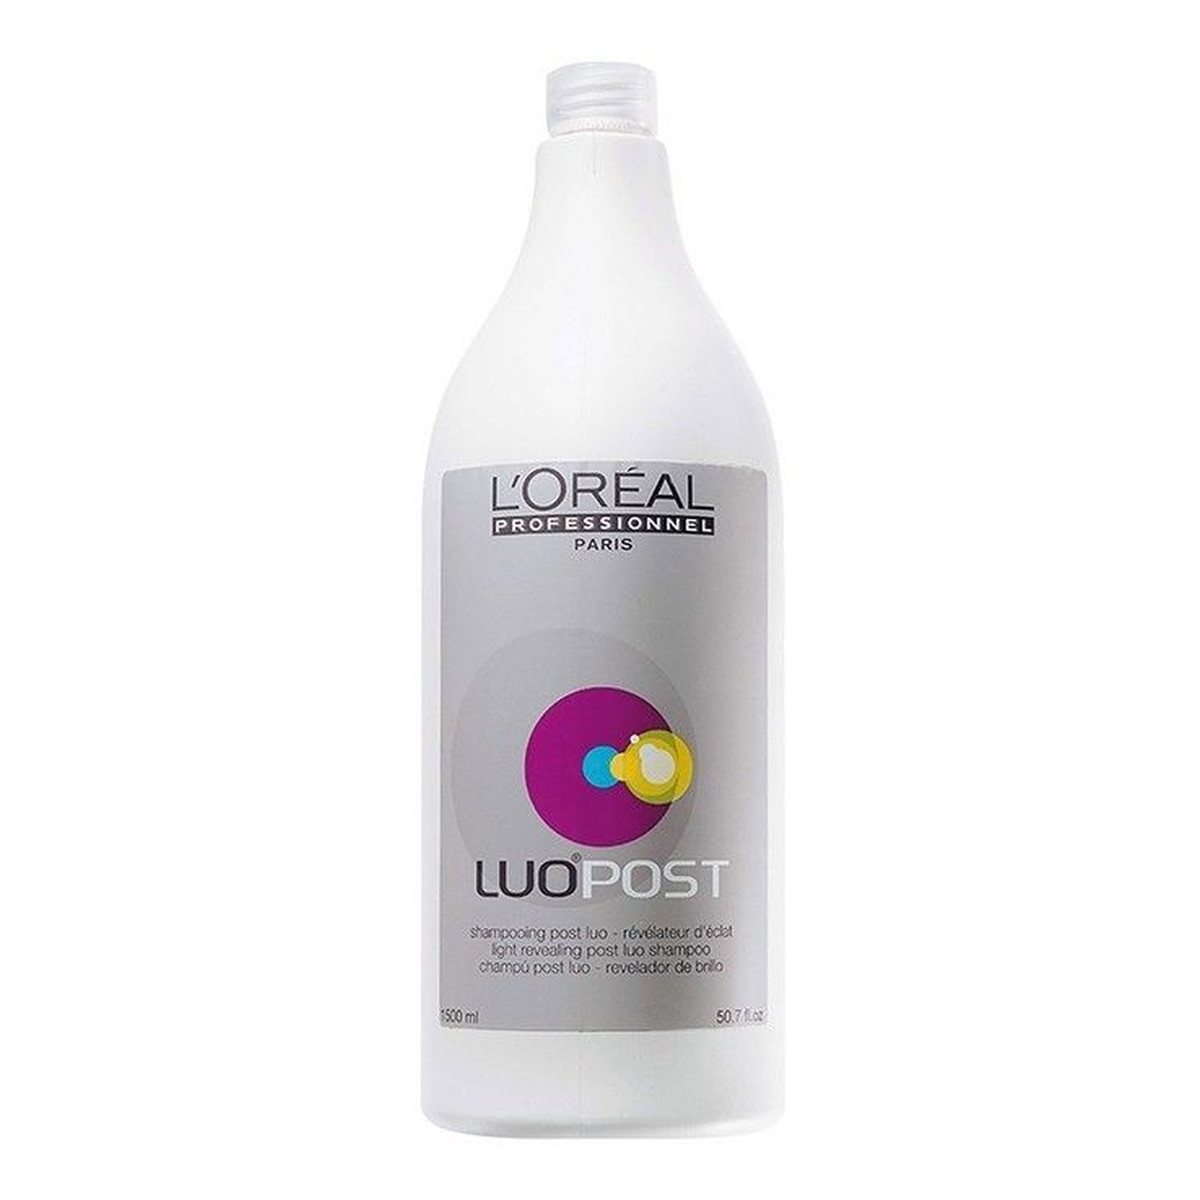 L'Oreal Paris Luo Post szampon potęgujący intensywność połysku włosów po koloryzacji 1500ml